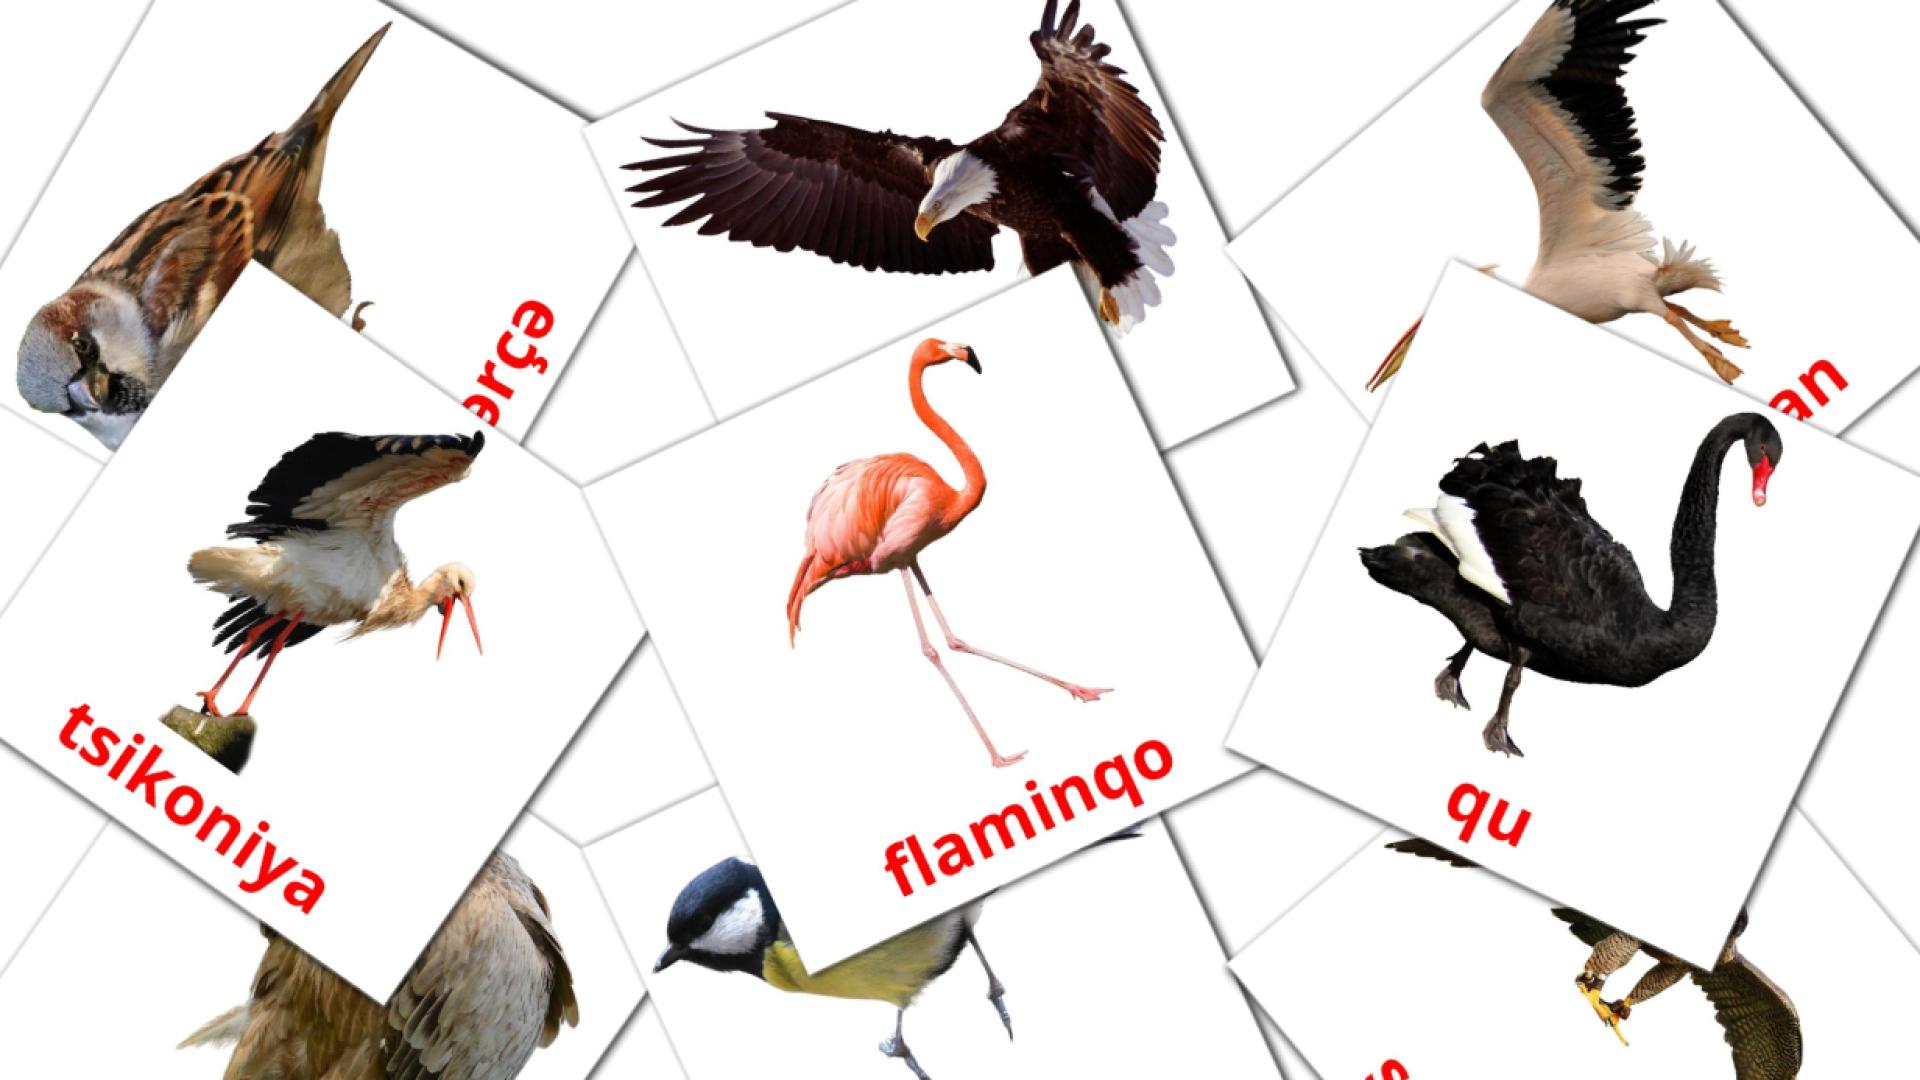 Wilde vogels - azerbeidzjaanse woordenschatkaarten